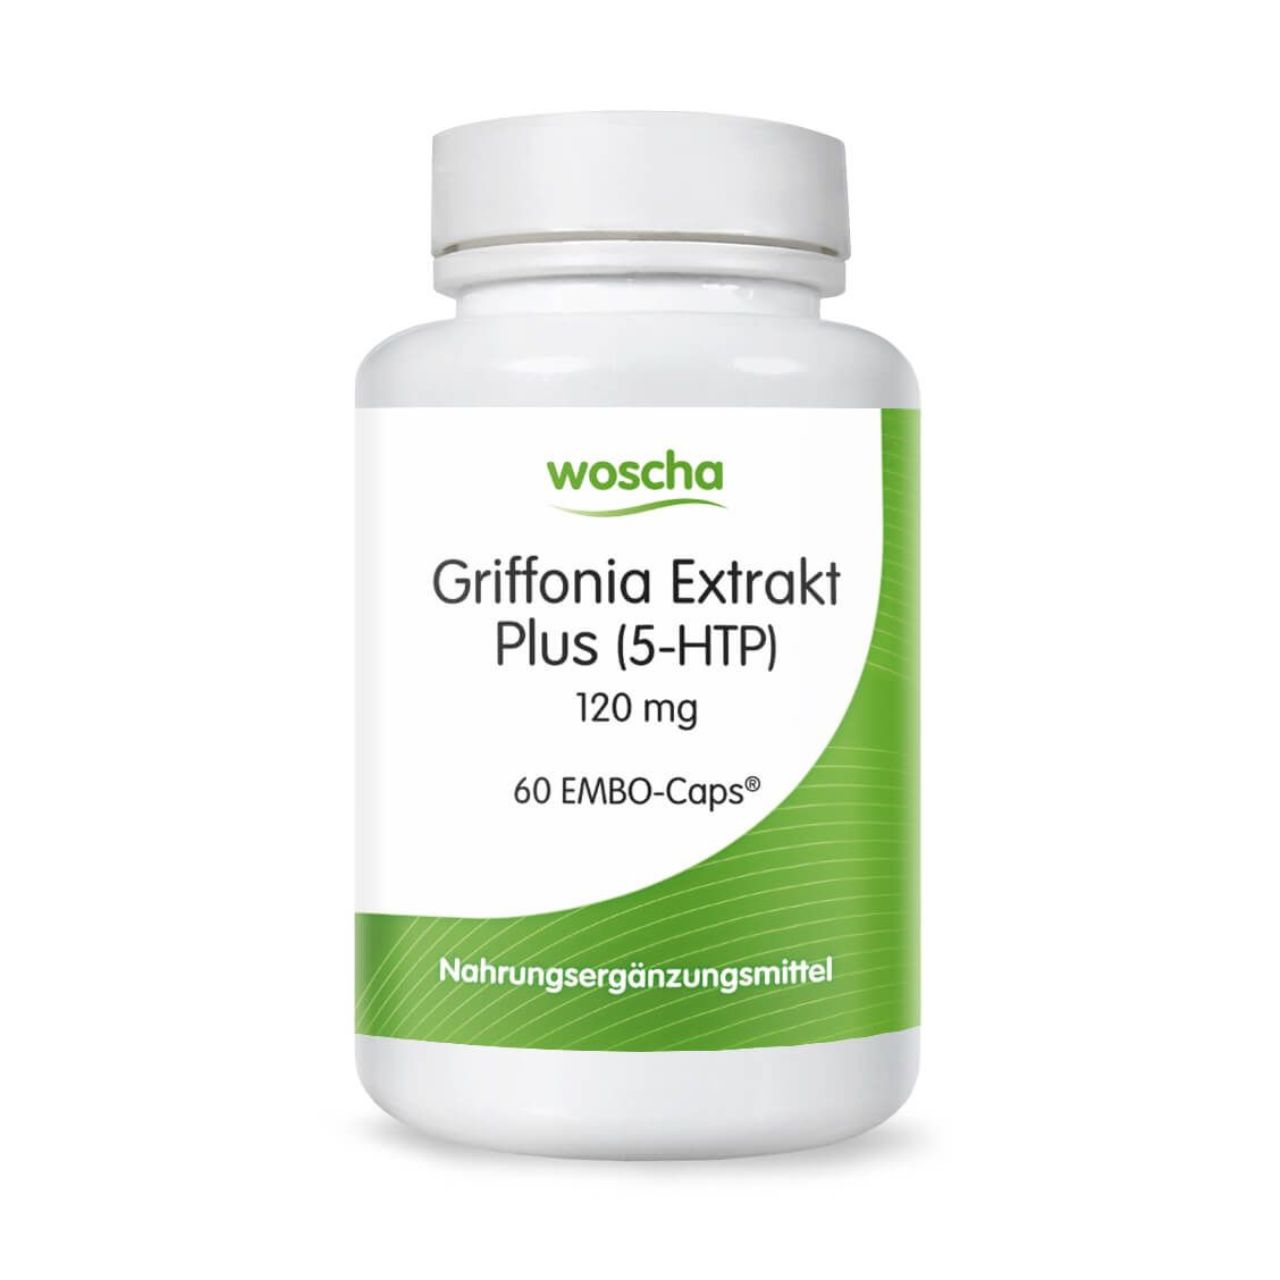 Woscha Griffonia Extrakt Plus von podo medi beinhaltet 60 EMBO-CAPS